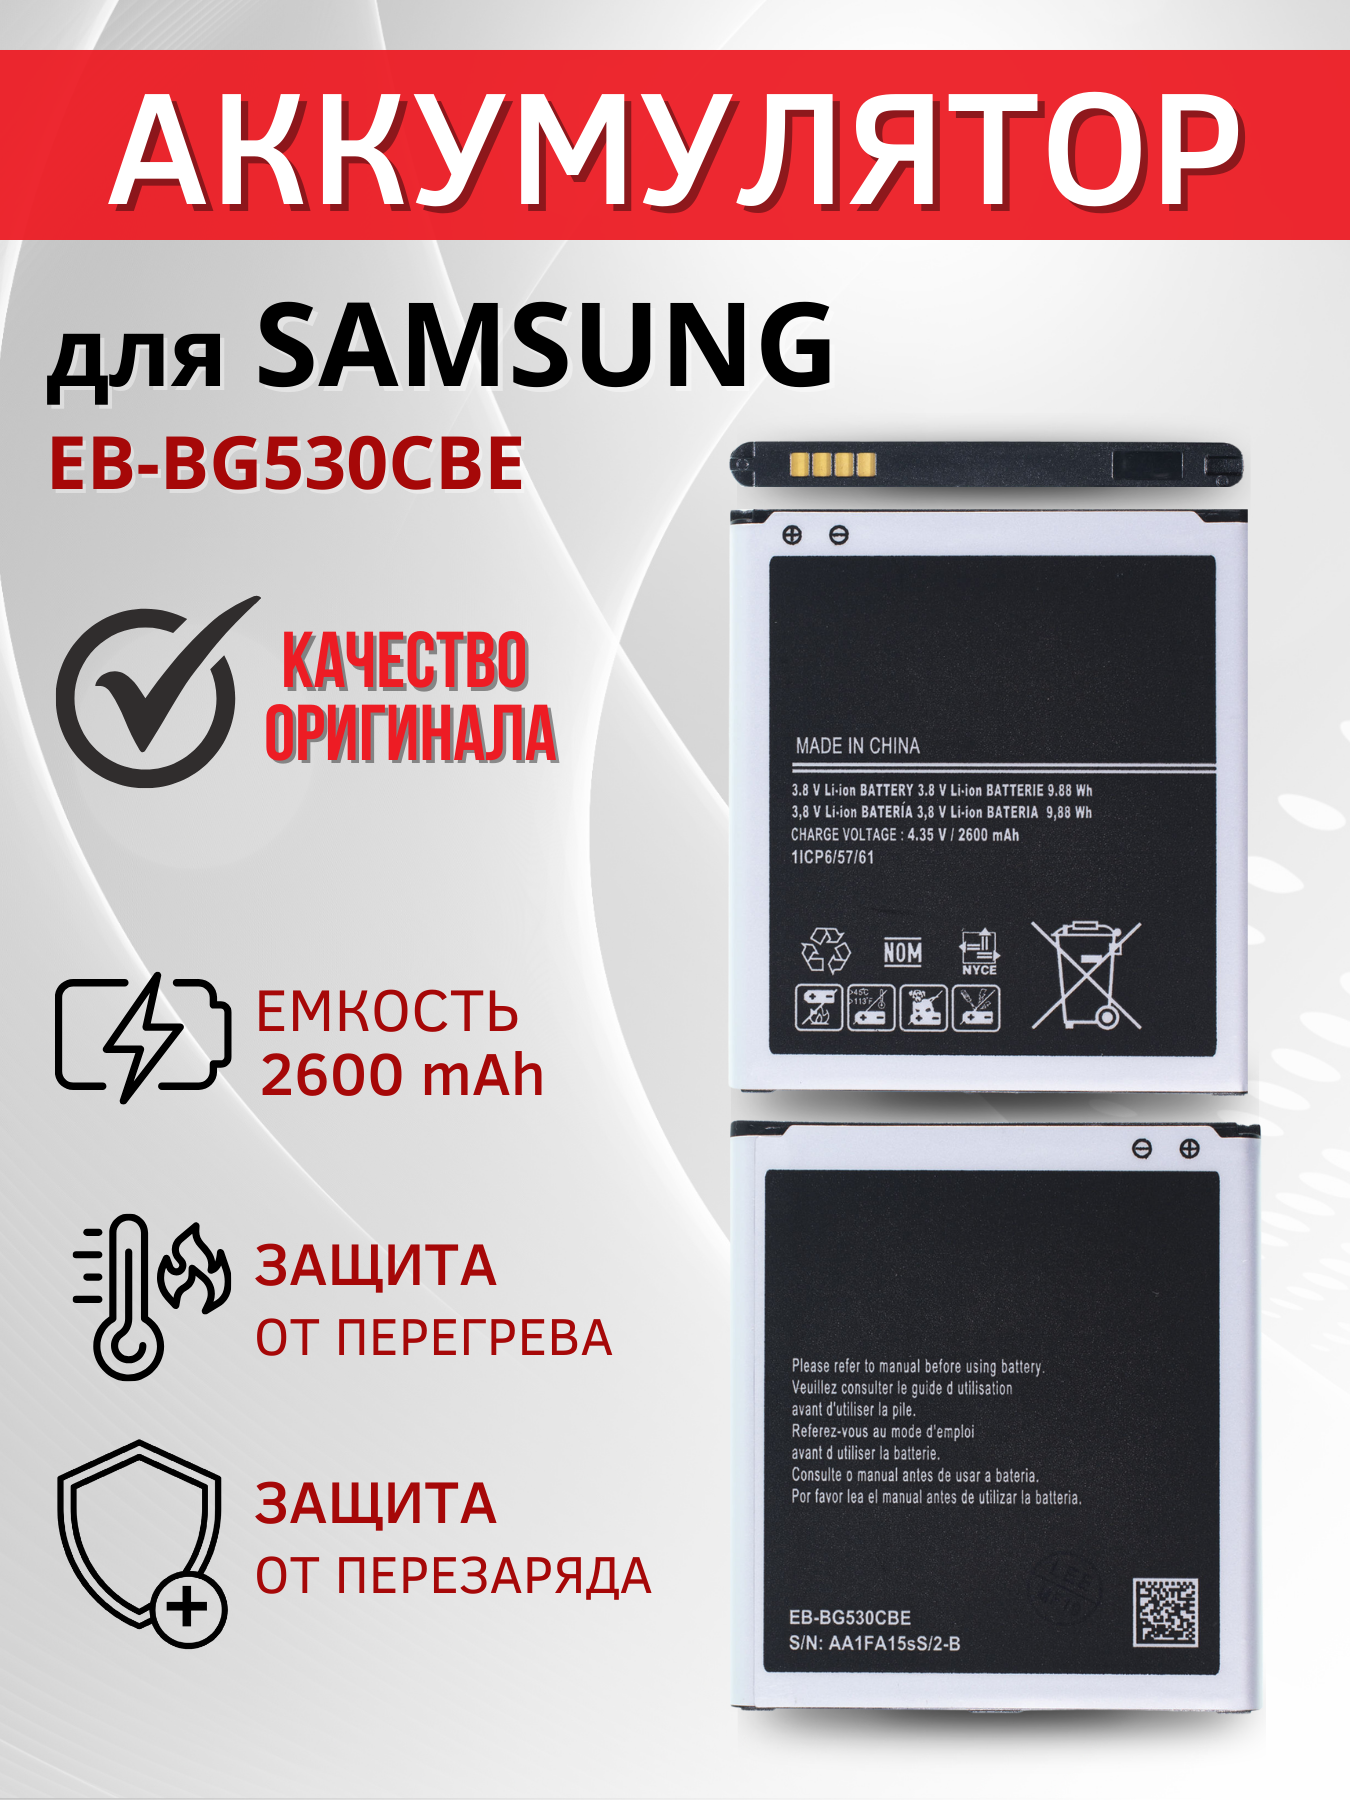 Аккумулятор EB-BG530CBE для Samsung Galaxy J2 (2018) SM-J250F, J2 Core (2018) SM-J260F, J3 (2016) SM-J320F и др